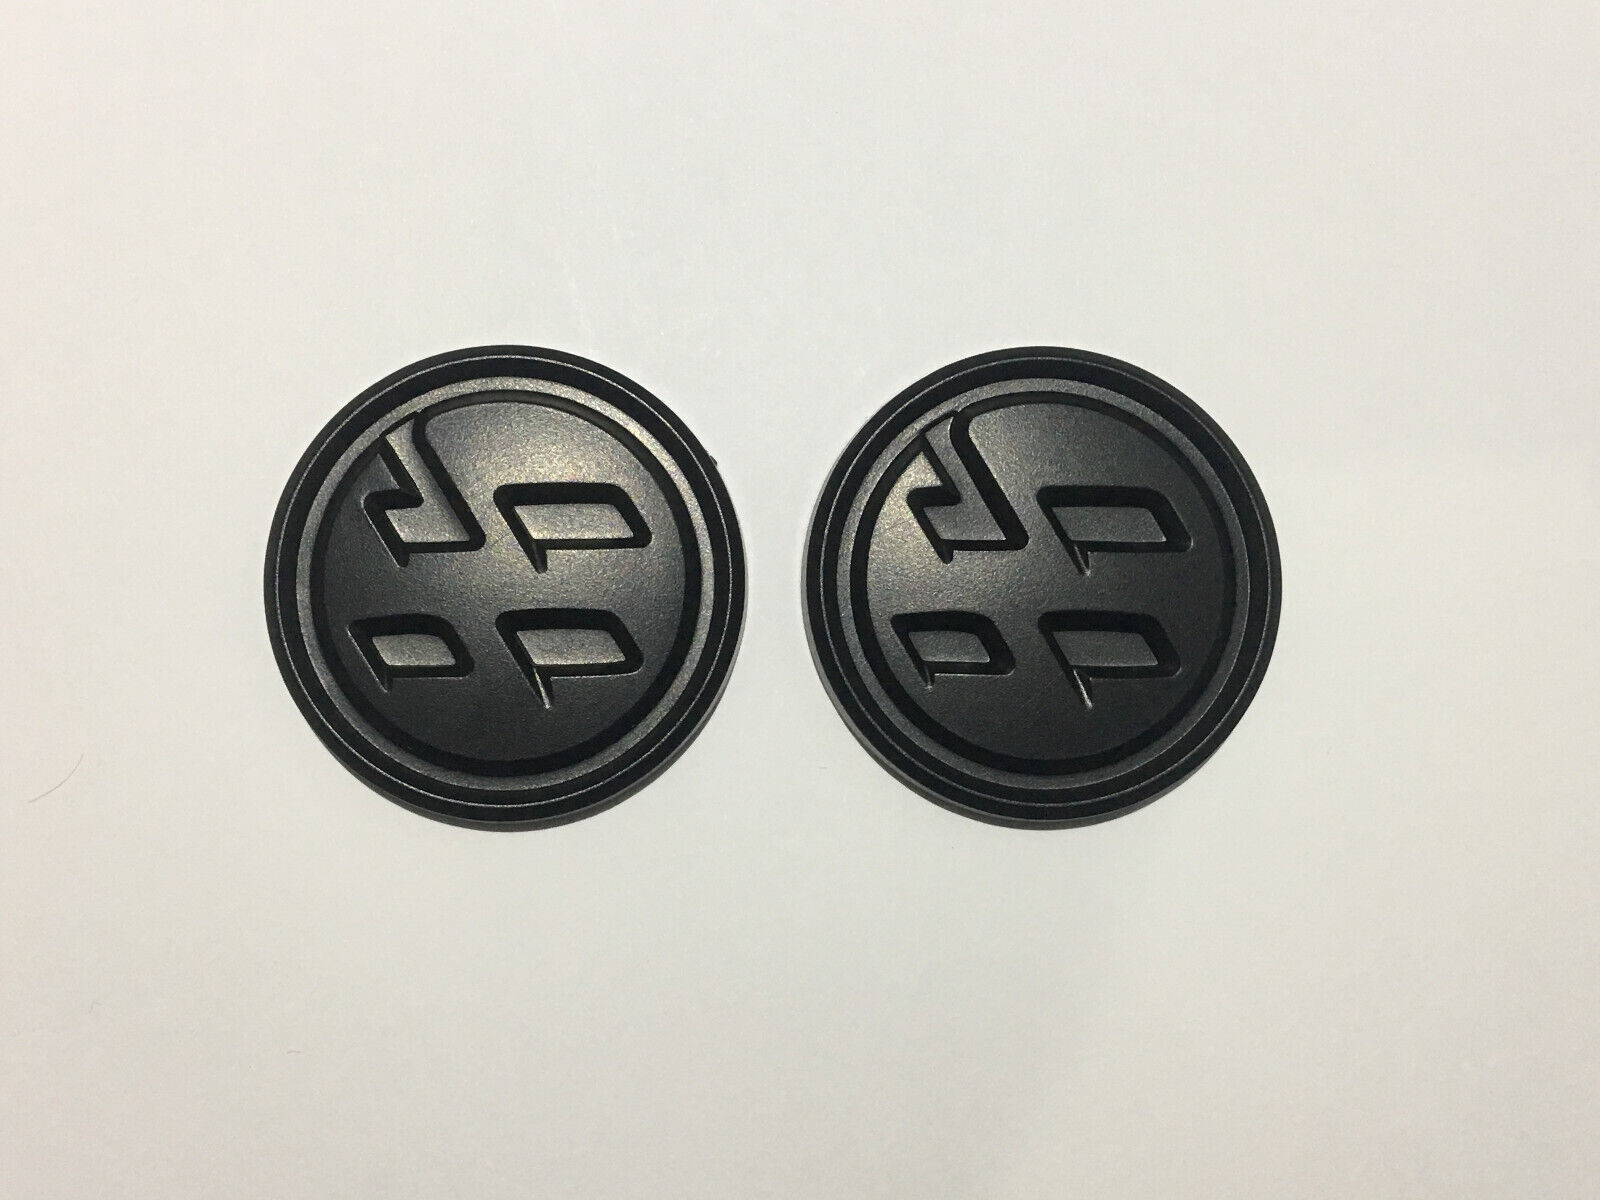 OEM Style Matte Black Side Emblem Badge Sticker Set for Toyota 86 2017 ~ 2020